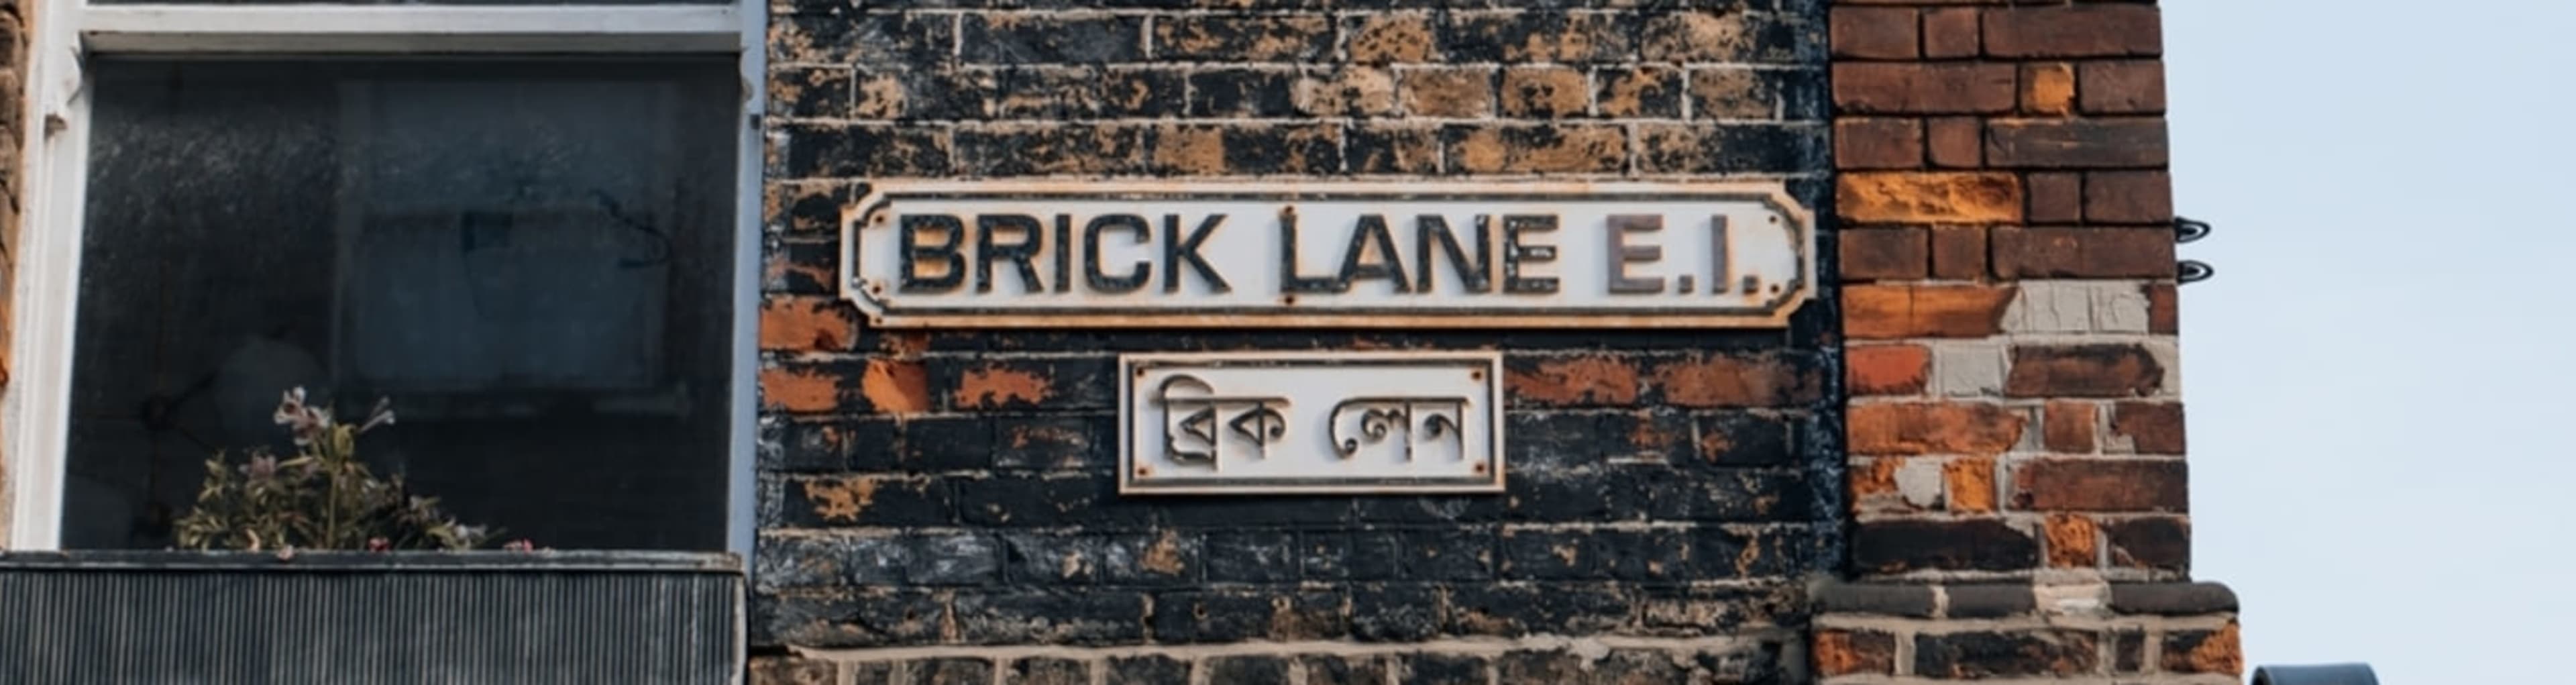 Brick Lane street sign.